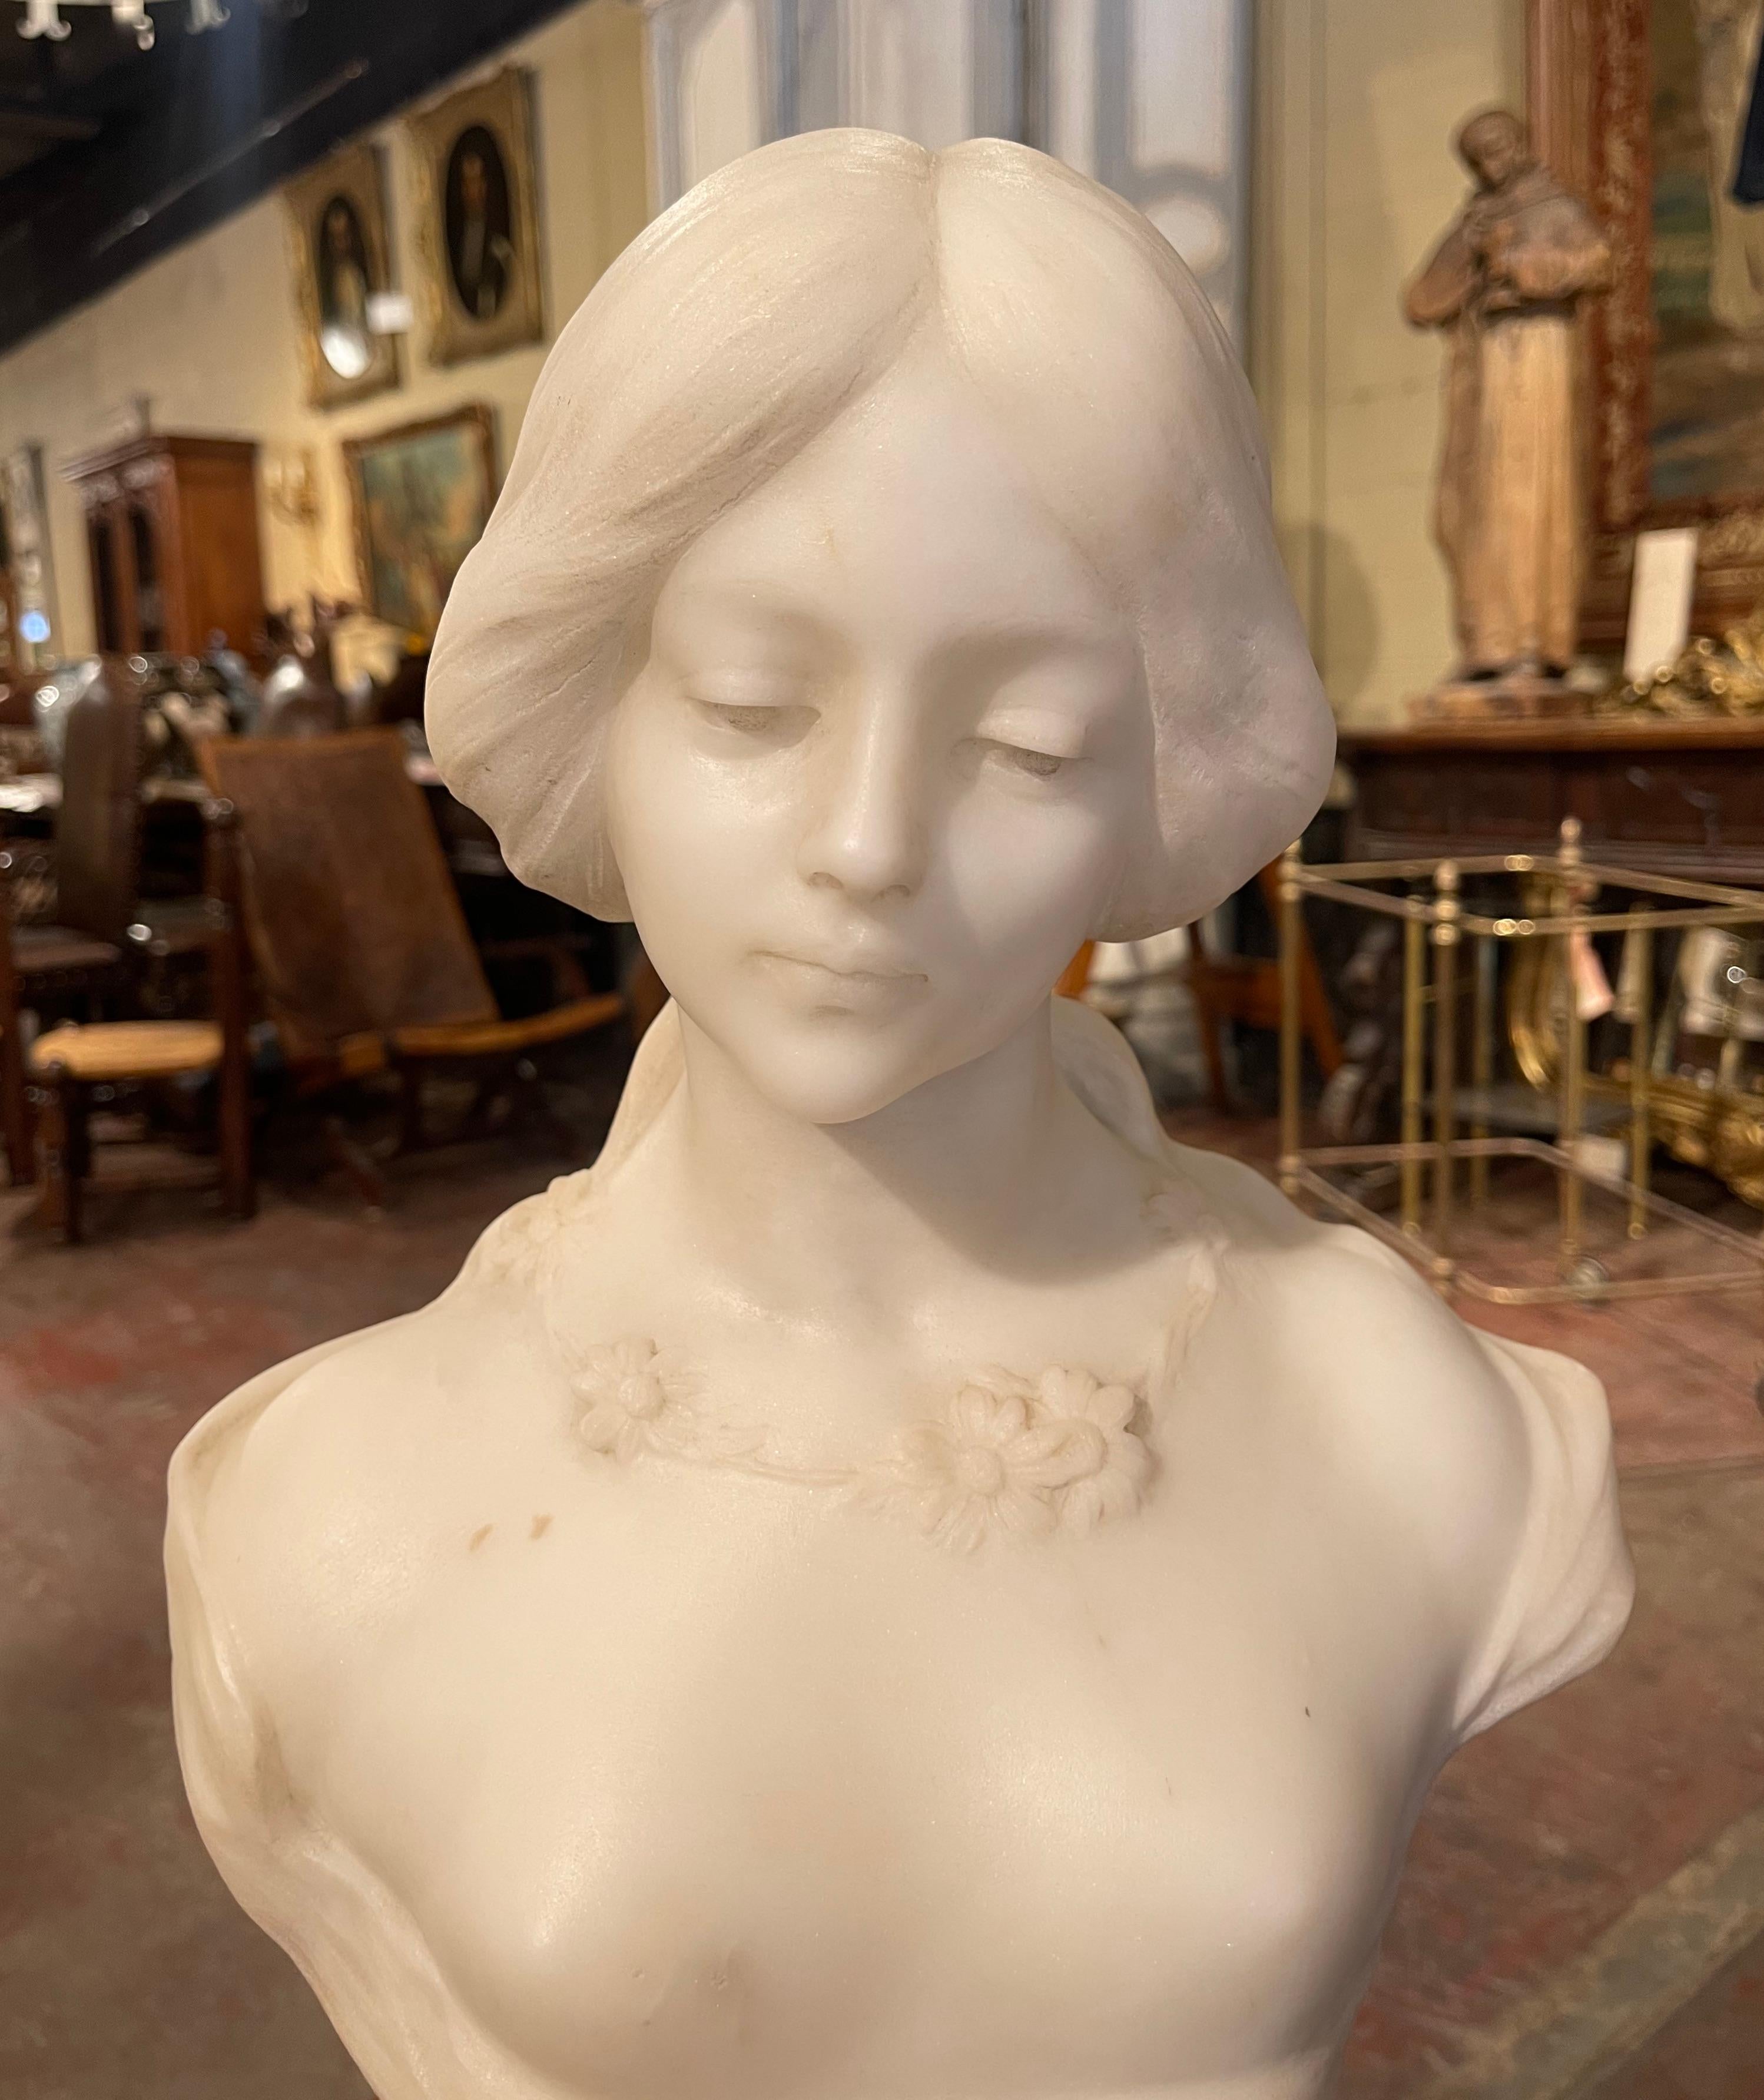 Diese zweiteilige Büste aus weißem Marmor auf einem Quarzsockel wurde um 1920 in Frankreich gefertigt und ist ein wahres Abbild der französischen Eleganz. Die figurale Skulptur zeigt das Antlitz eines schönen, jungen Mädchens in einem Spitzenkleid